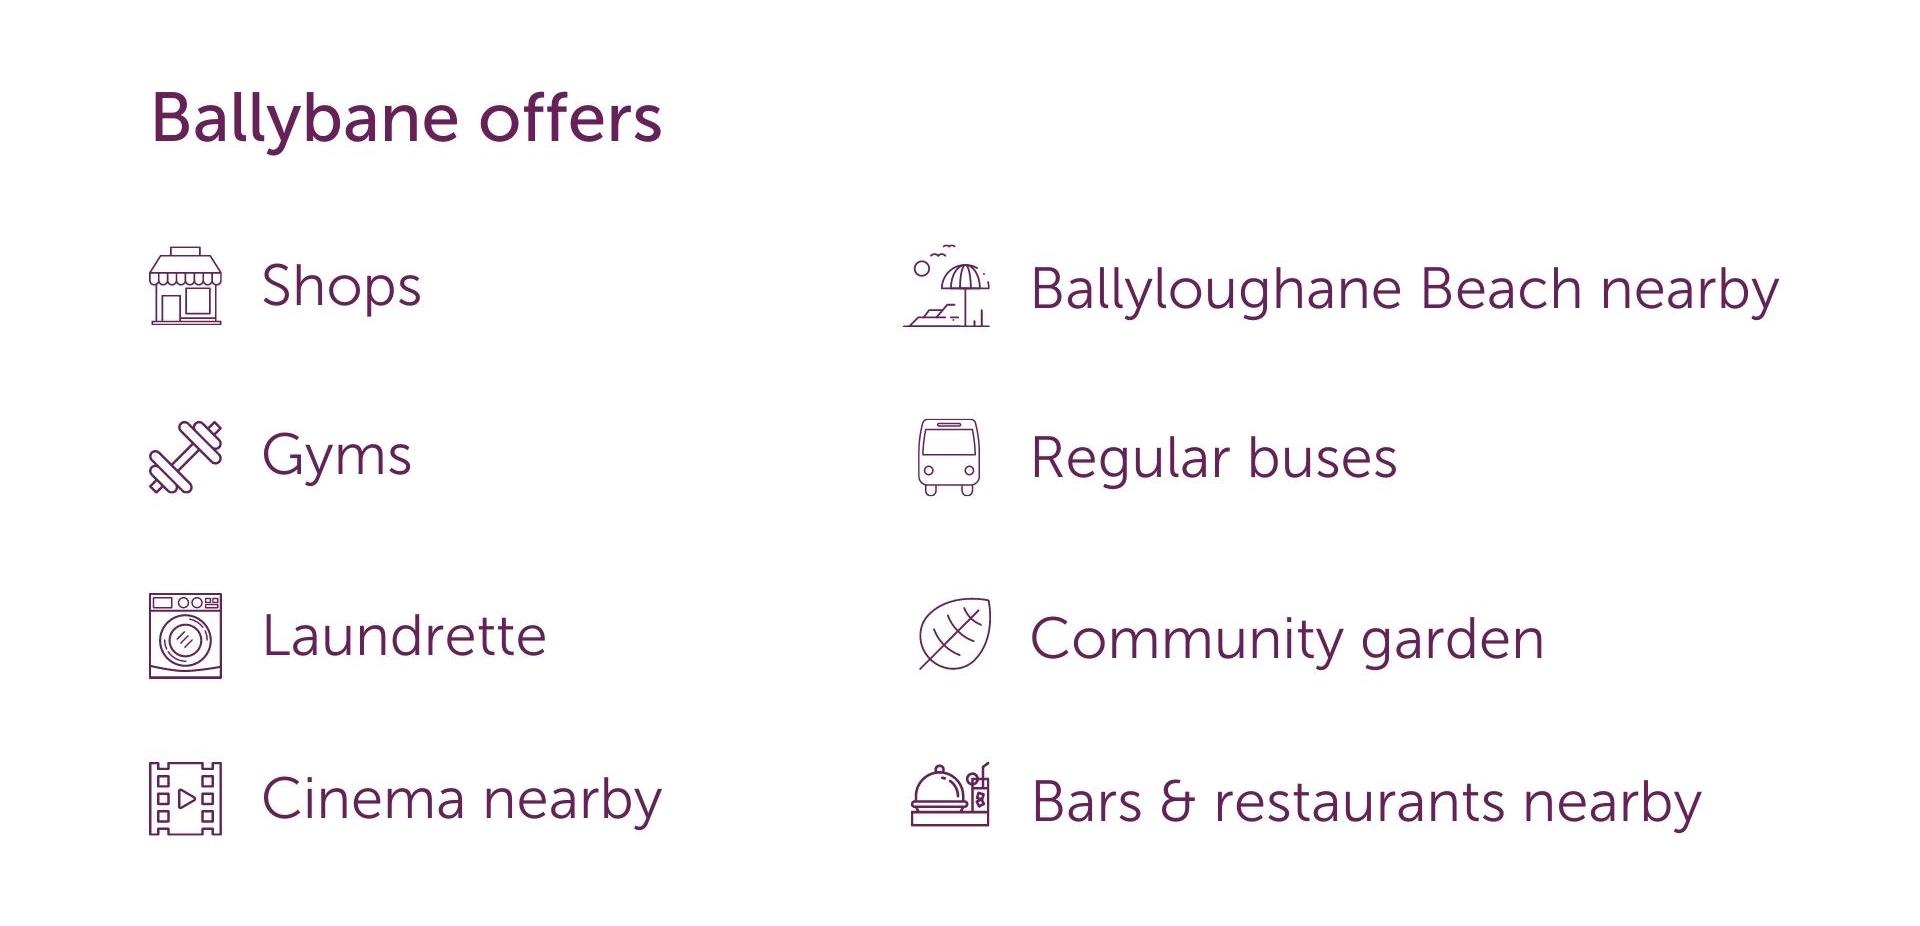 Ballybane offers, student accommodation